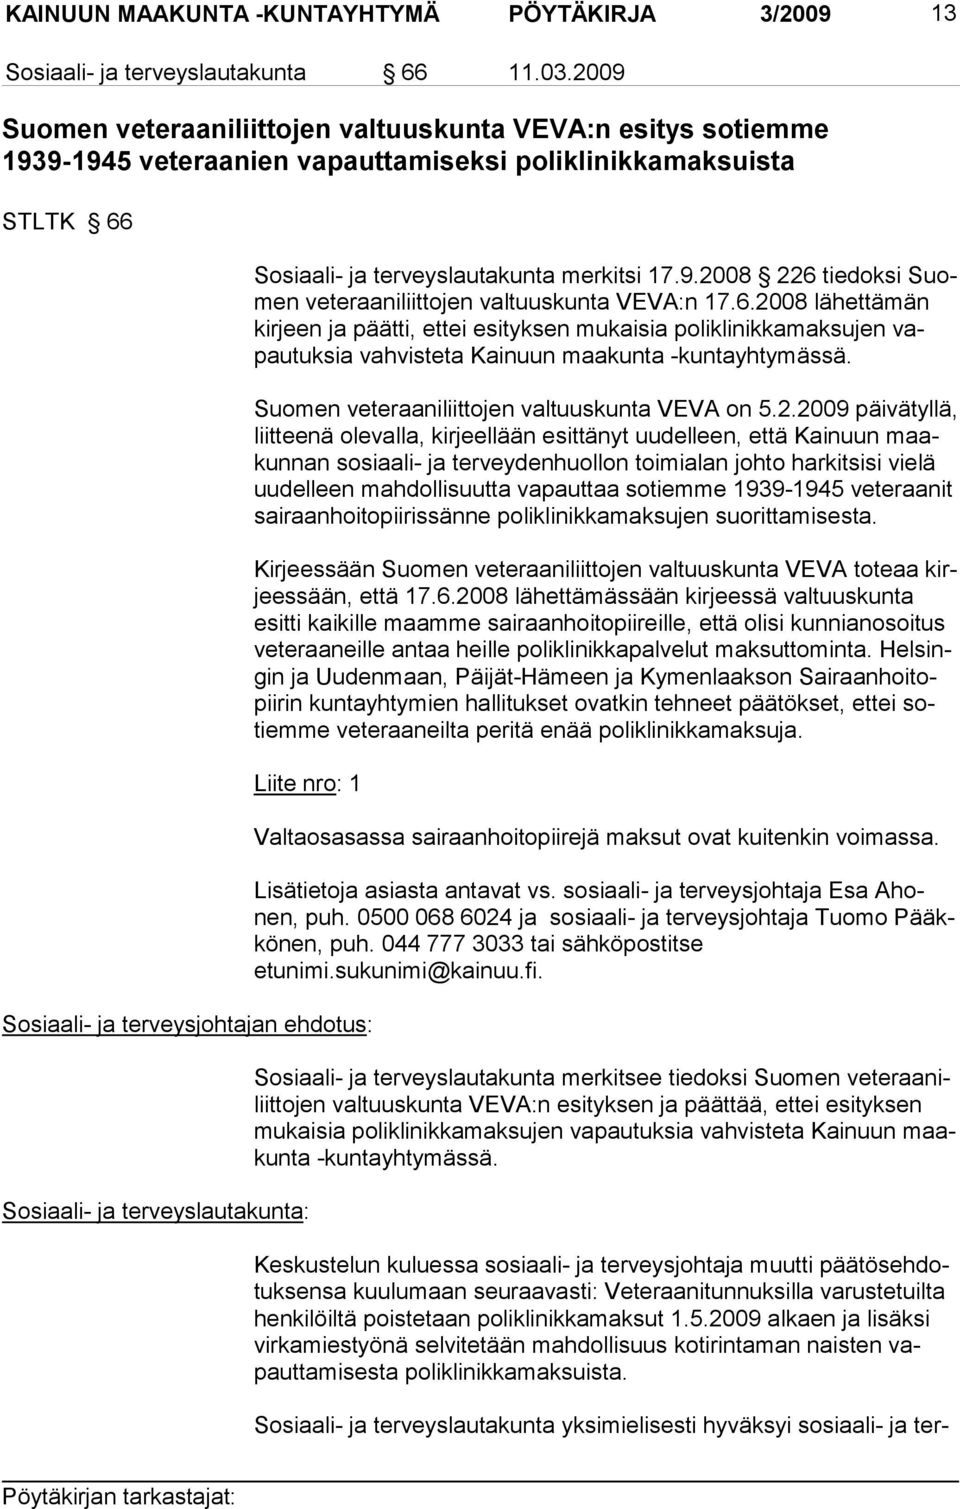 6.2008 lähettä män kirjeen ja päätti, ettei esityksen mukaisia polikli nikkamaksujen vapautuksia vahvisteta Kainuun maakunta -kuntayhty mässä. Suomen veteraaniliittojen valtuuskunta VE VA on 5.2.2009